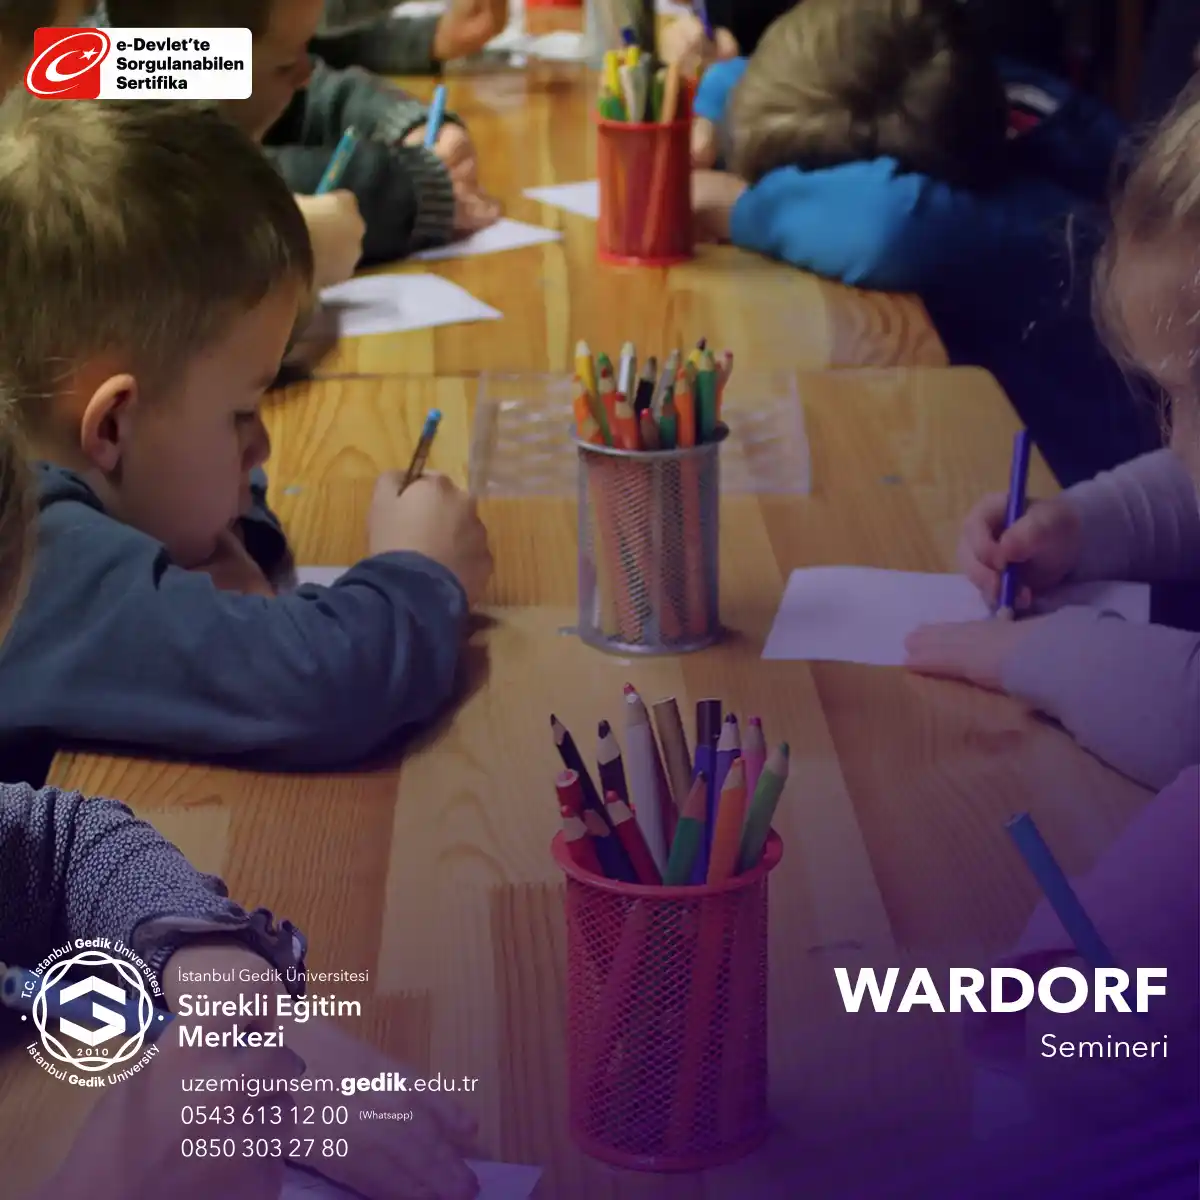 "Waldorf Eğitimi" semineri, eğitimciler ve ebeveynlere, Rudolf Steiner'in kurduğu Waldorf eğitim sistemi ve bu sistemin öğrencilere nasıl derin bir öğrenme deneyimi sunabileceği konusunda bilgi vermektedir.